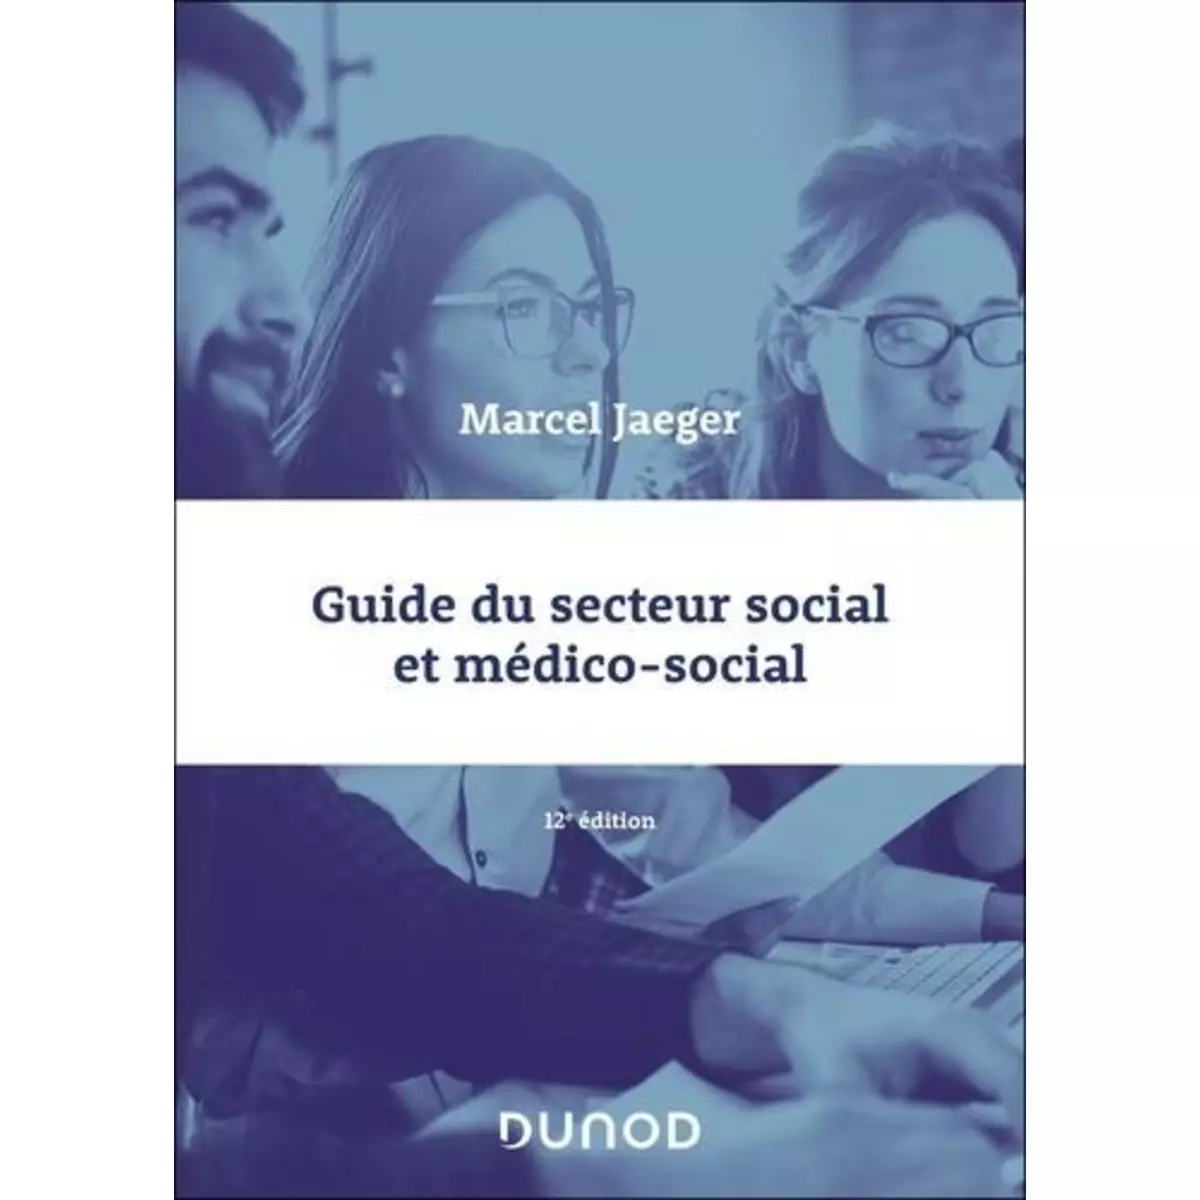  GUIDE DU SECTEUR SOCIAL ET MEDICO-SOCIAL. 12E EDITION, Jaeger Marcel